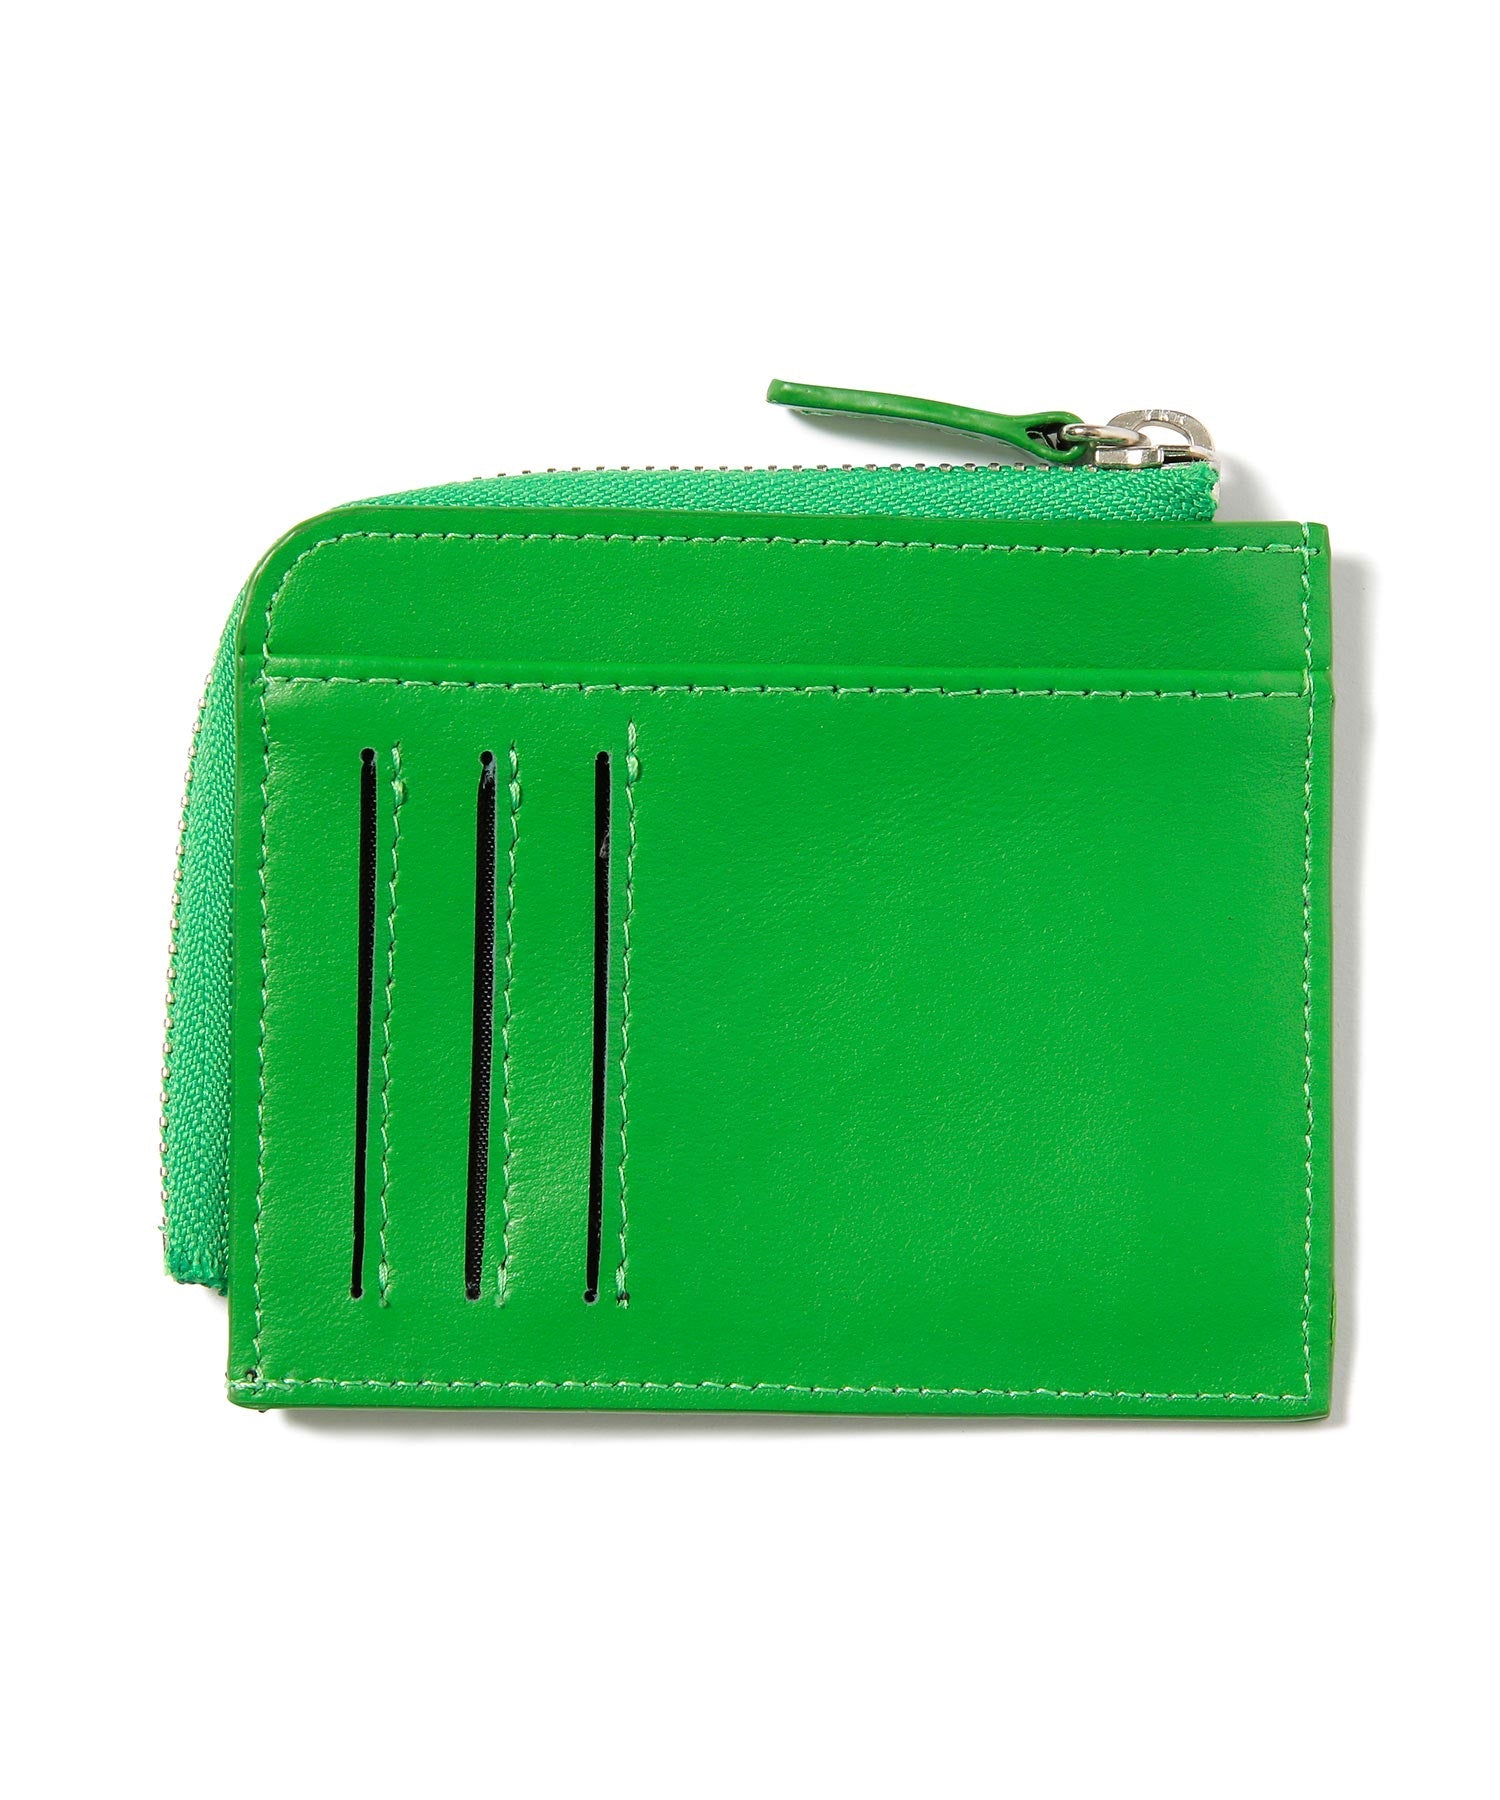 กระเป๋าสตางค์ XLARGER รุ่น Leather Wallet